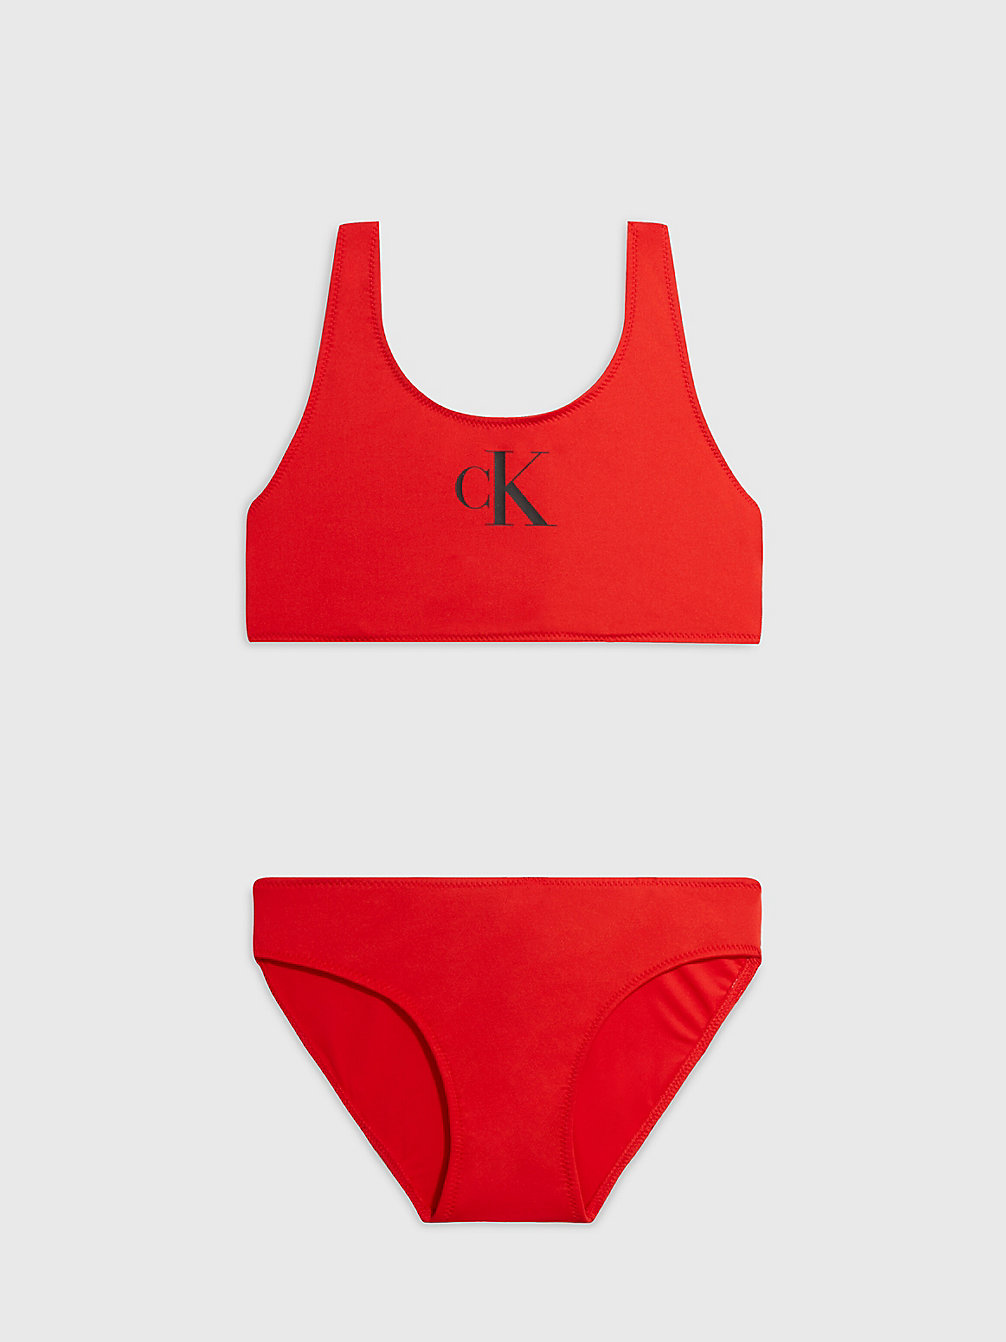 CAJUN RED Girls Bralette Bikini Set - CK Monogram undefined girls Calvin Klein